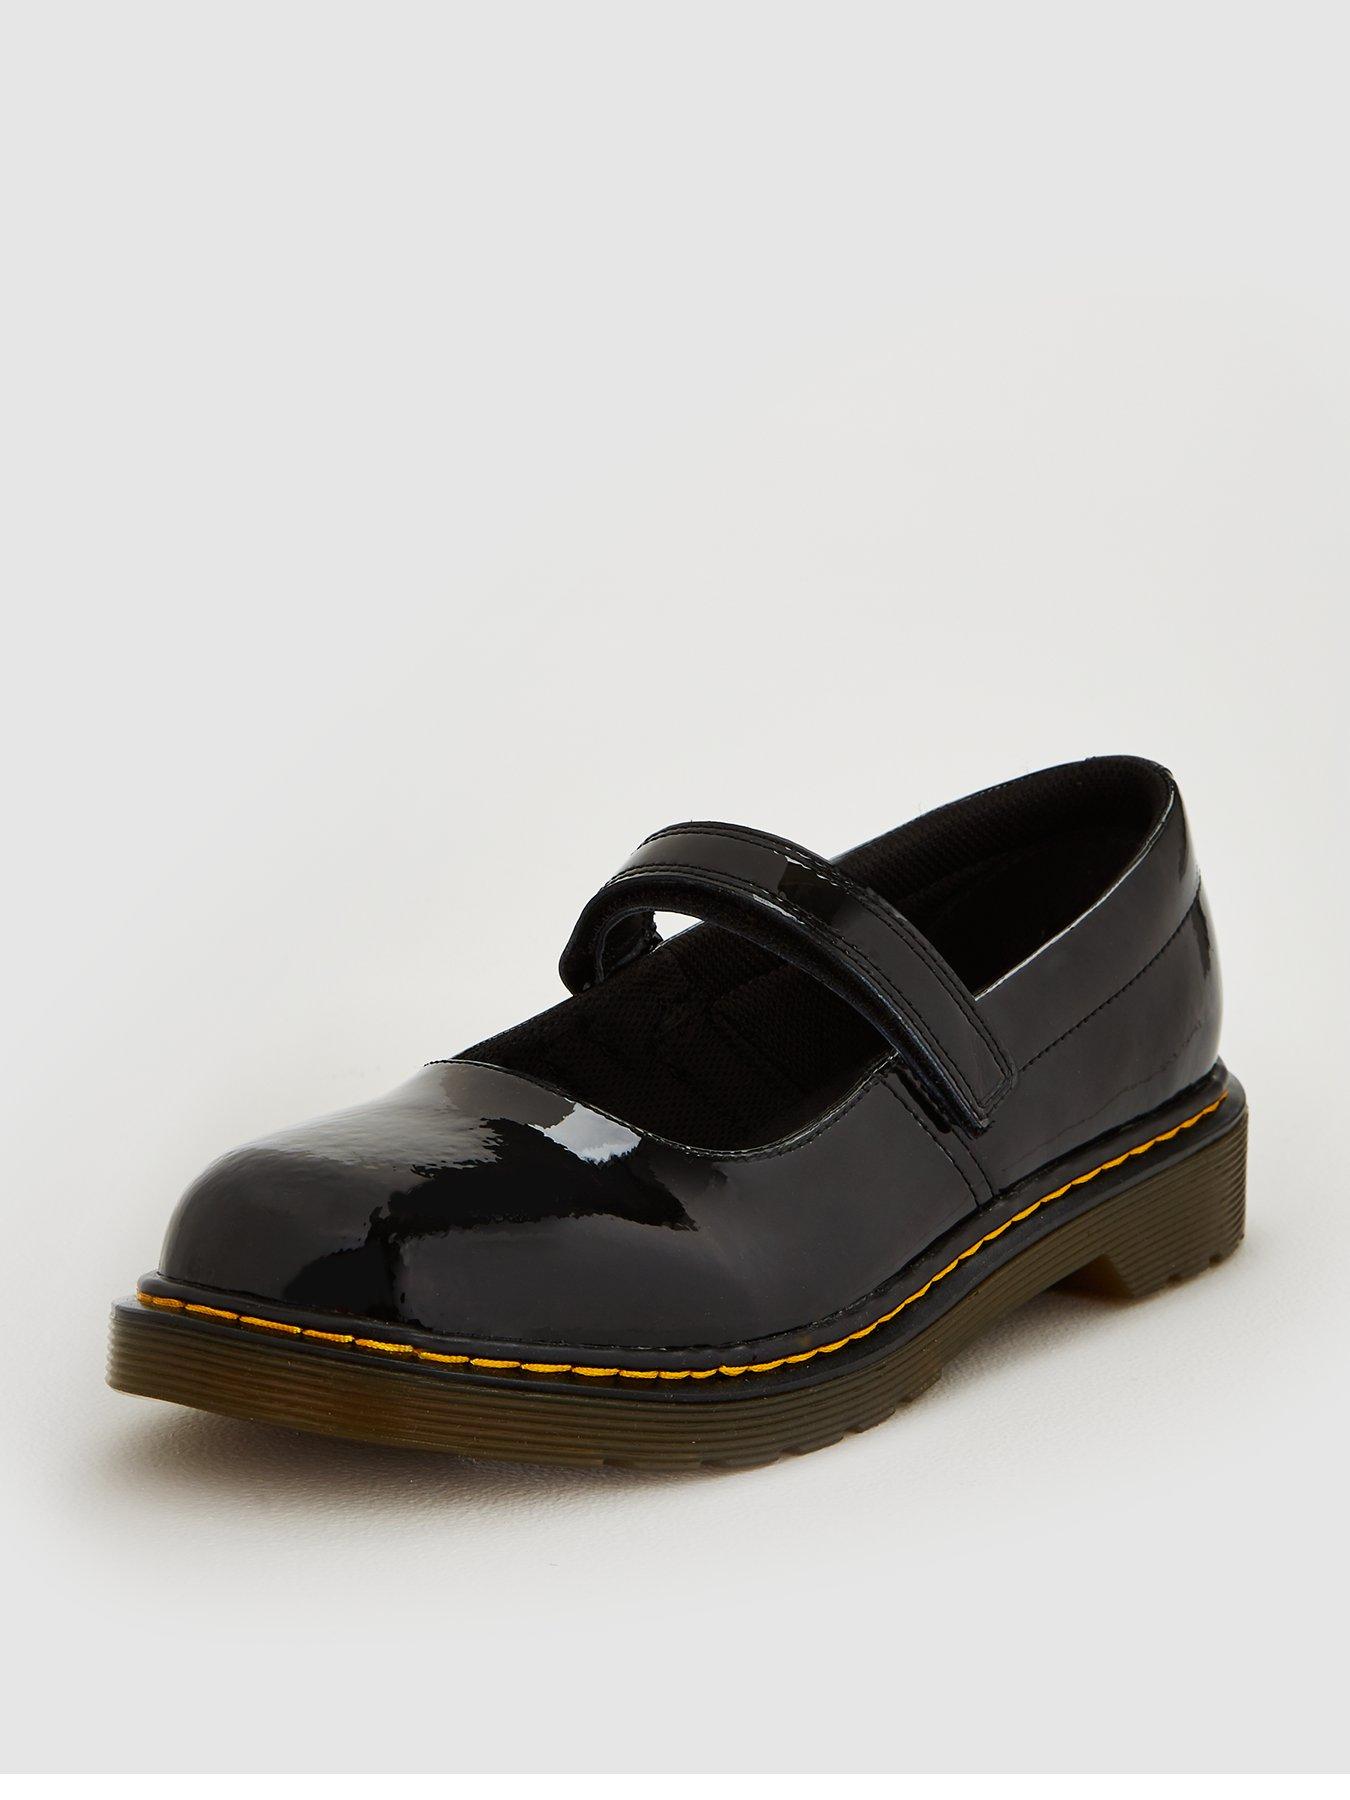 black mary jane shoes uk